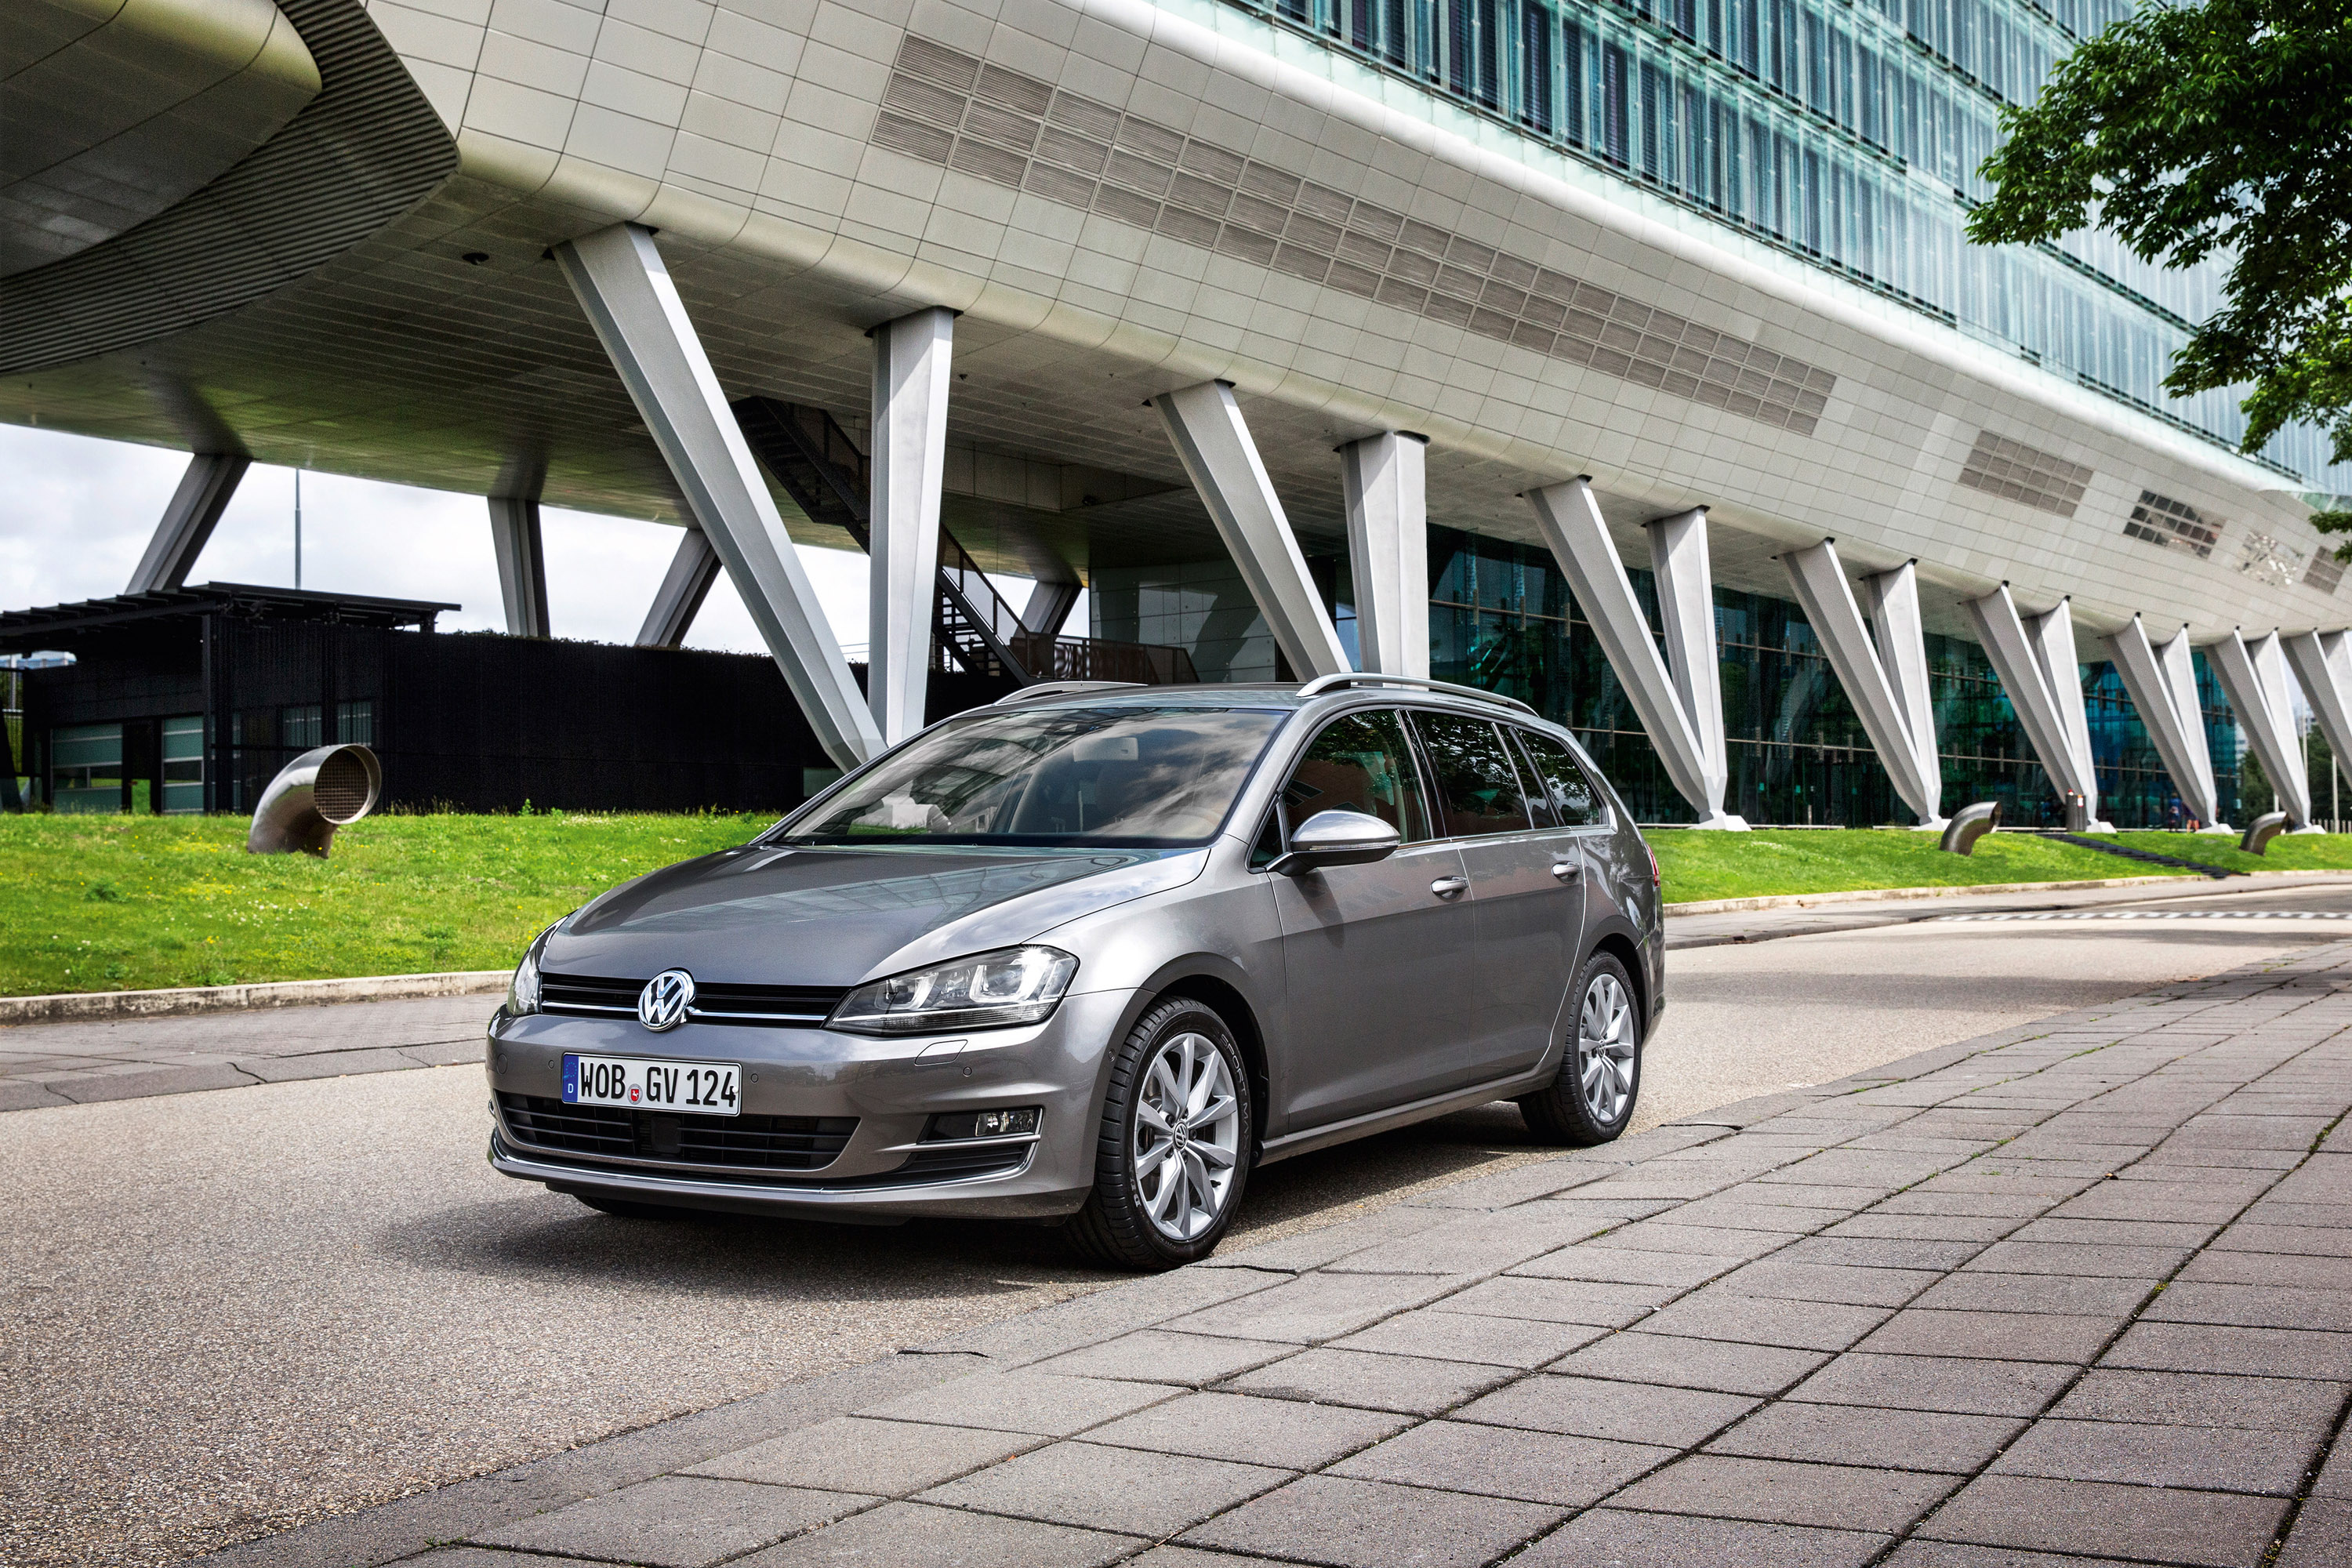 Præferencebehandling Etna omfavne 2014 Volkswagen Golf VII Variant 4Motion - EU Price